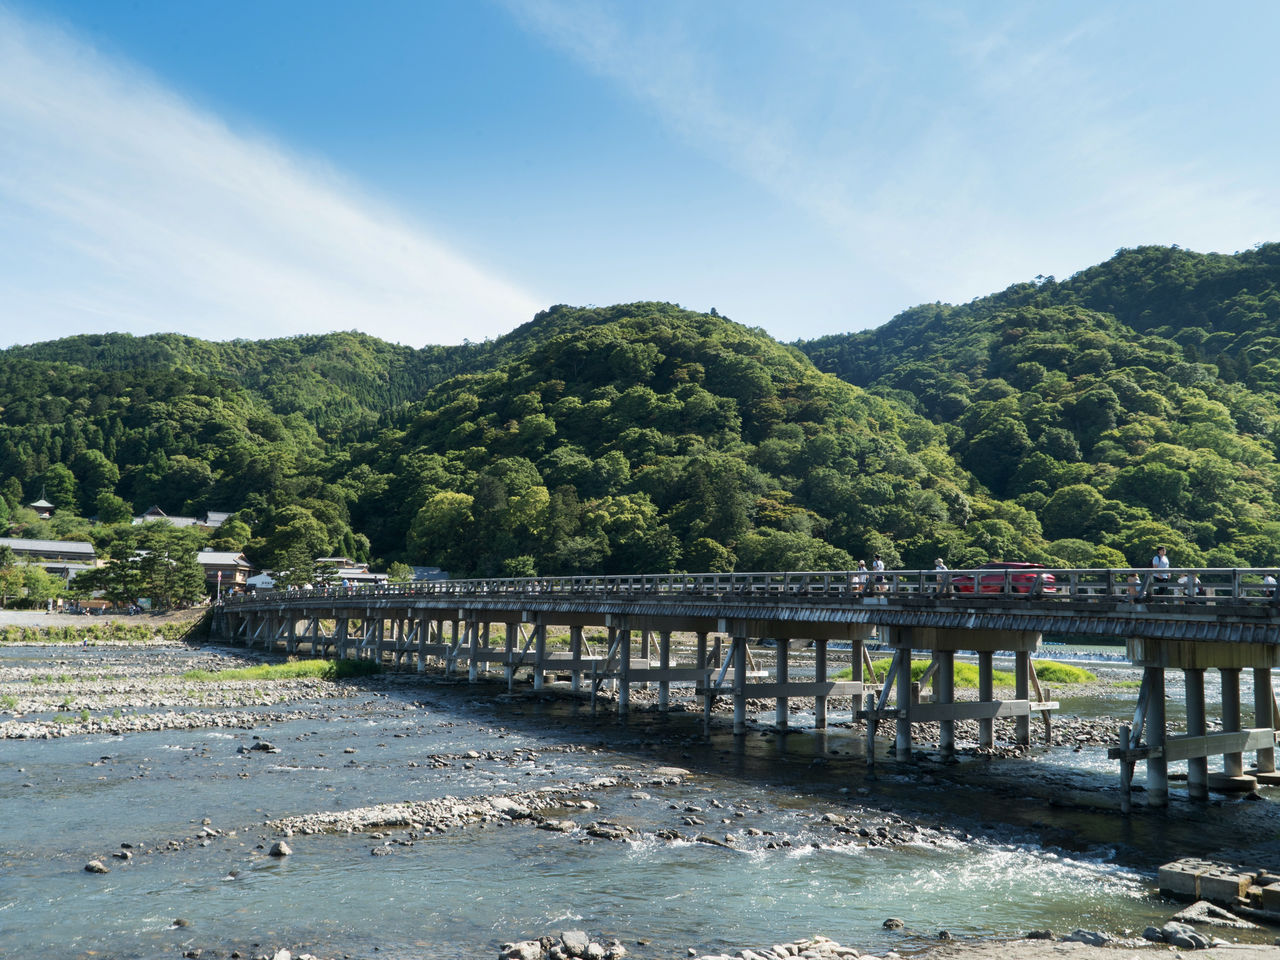 Découvrez les vues populaires d’Arashiyama dont le pont Togetsu-kyô et les calmes bambouseraies.